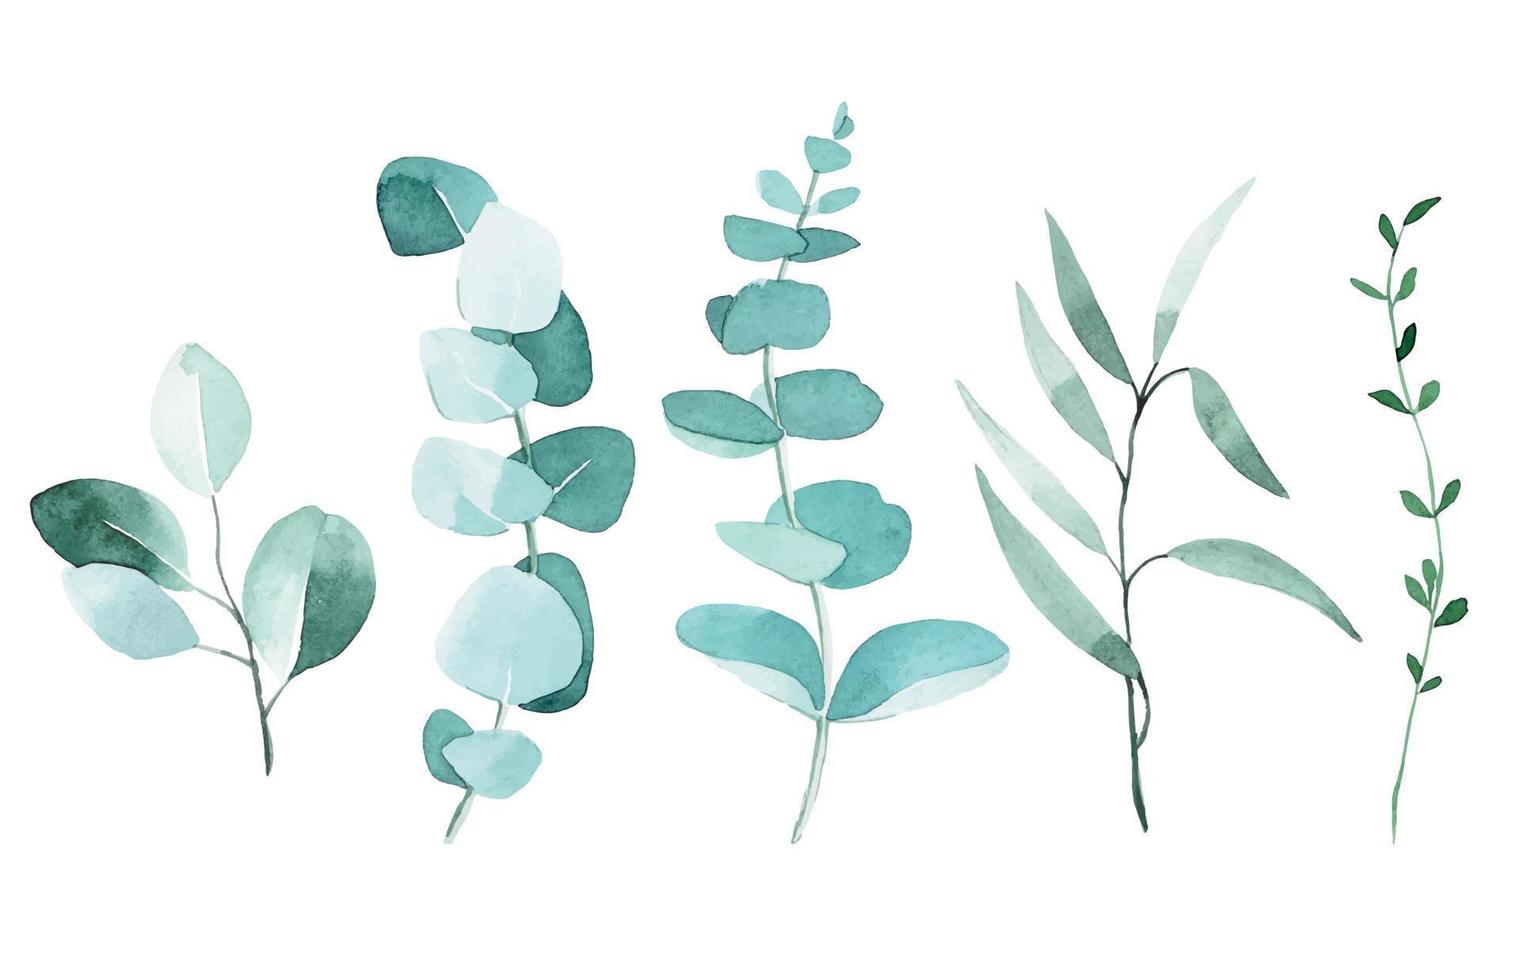 dessin à l'aquarelle. ensemble de feuilles d'eucalyptus. feuilles vertes tropicales isolées sur fond blanc élégantes dans un style vintage. vecteur